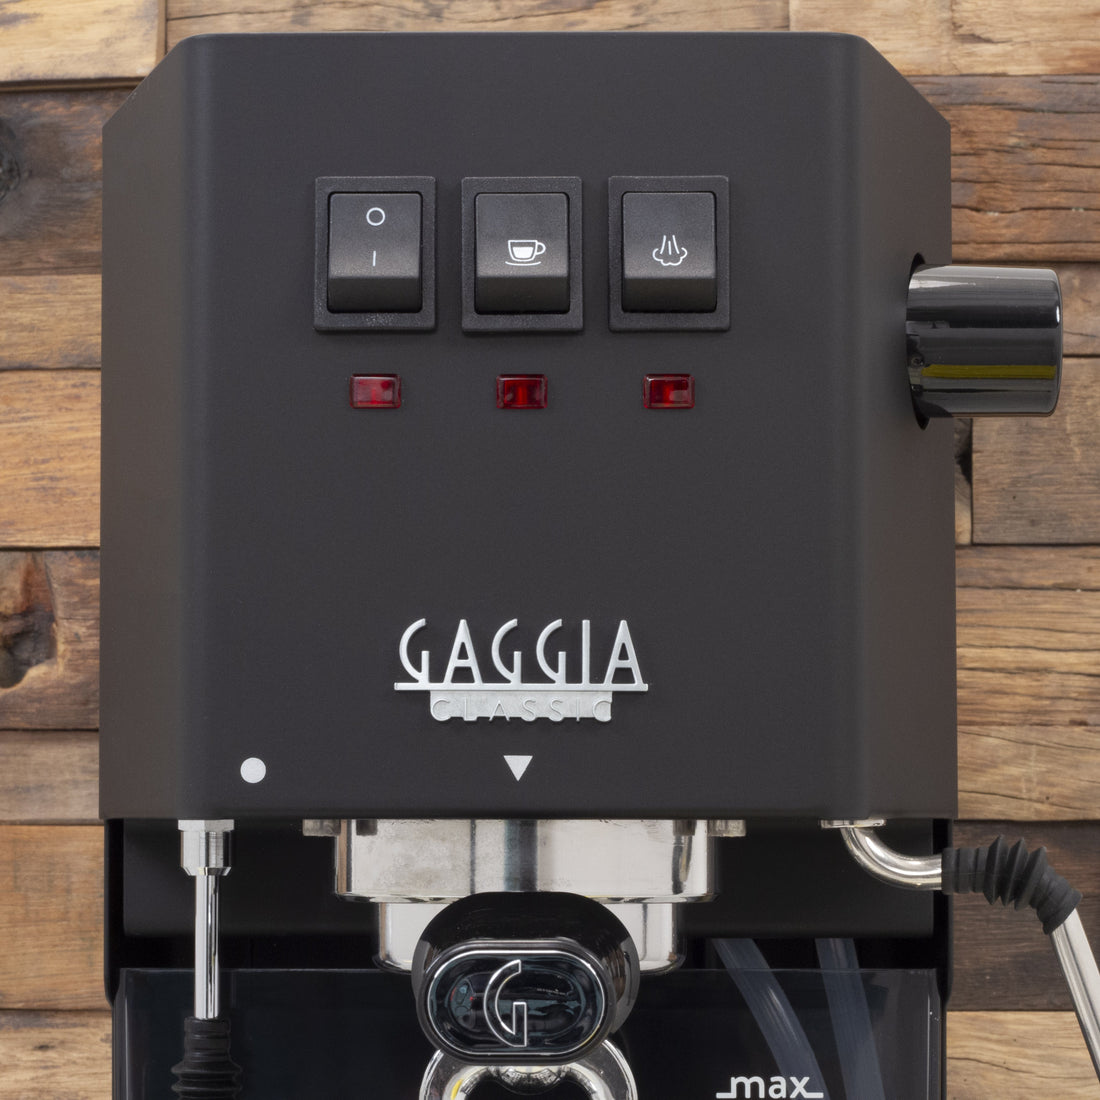 Gaggia Classic Evo Pro Espresso Machine in Thunder Black with Blackened Oak